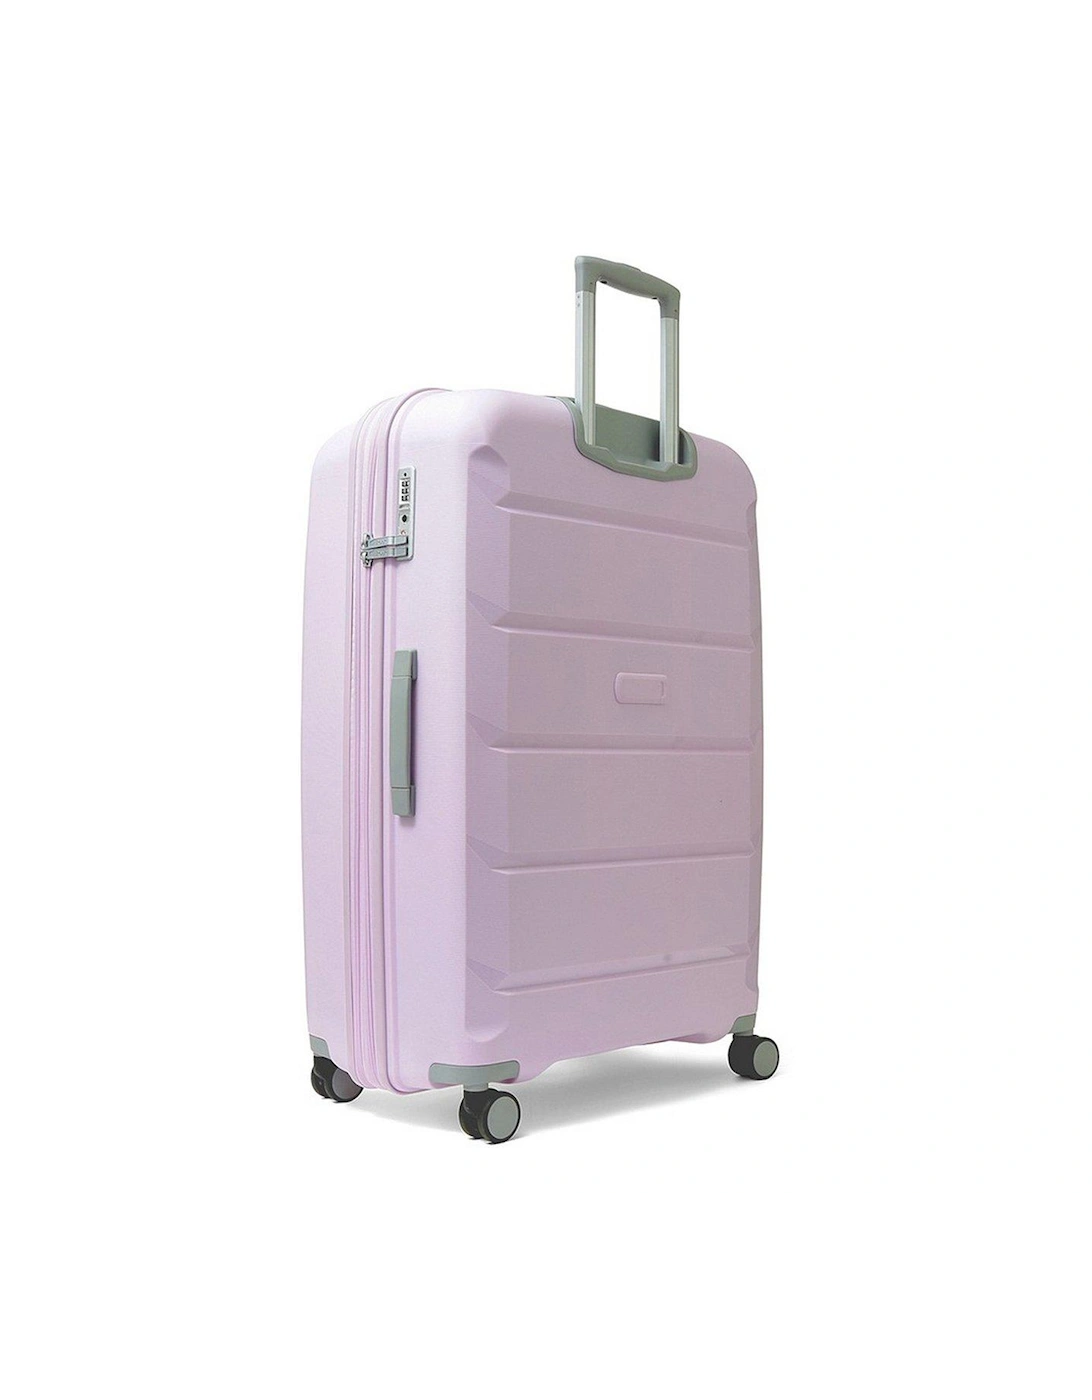 Tulum 8 Wheel Hardshell Large Suitcase - Lilac